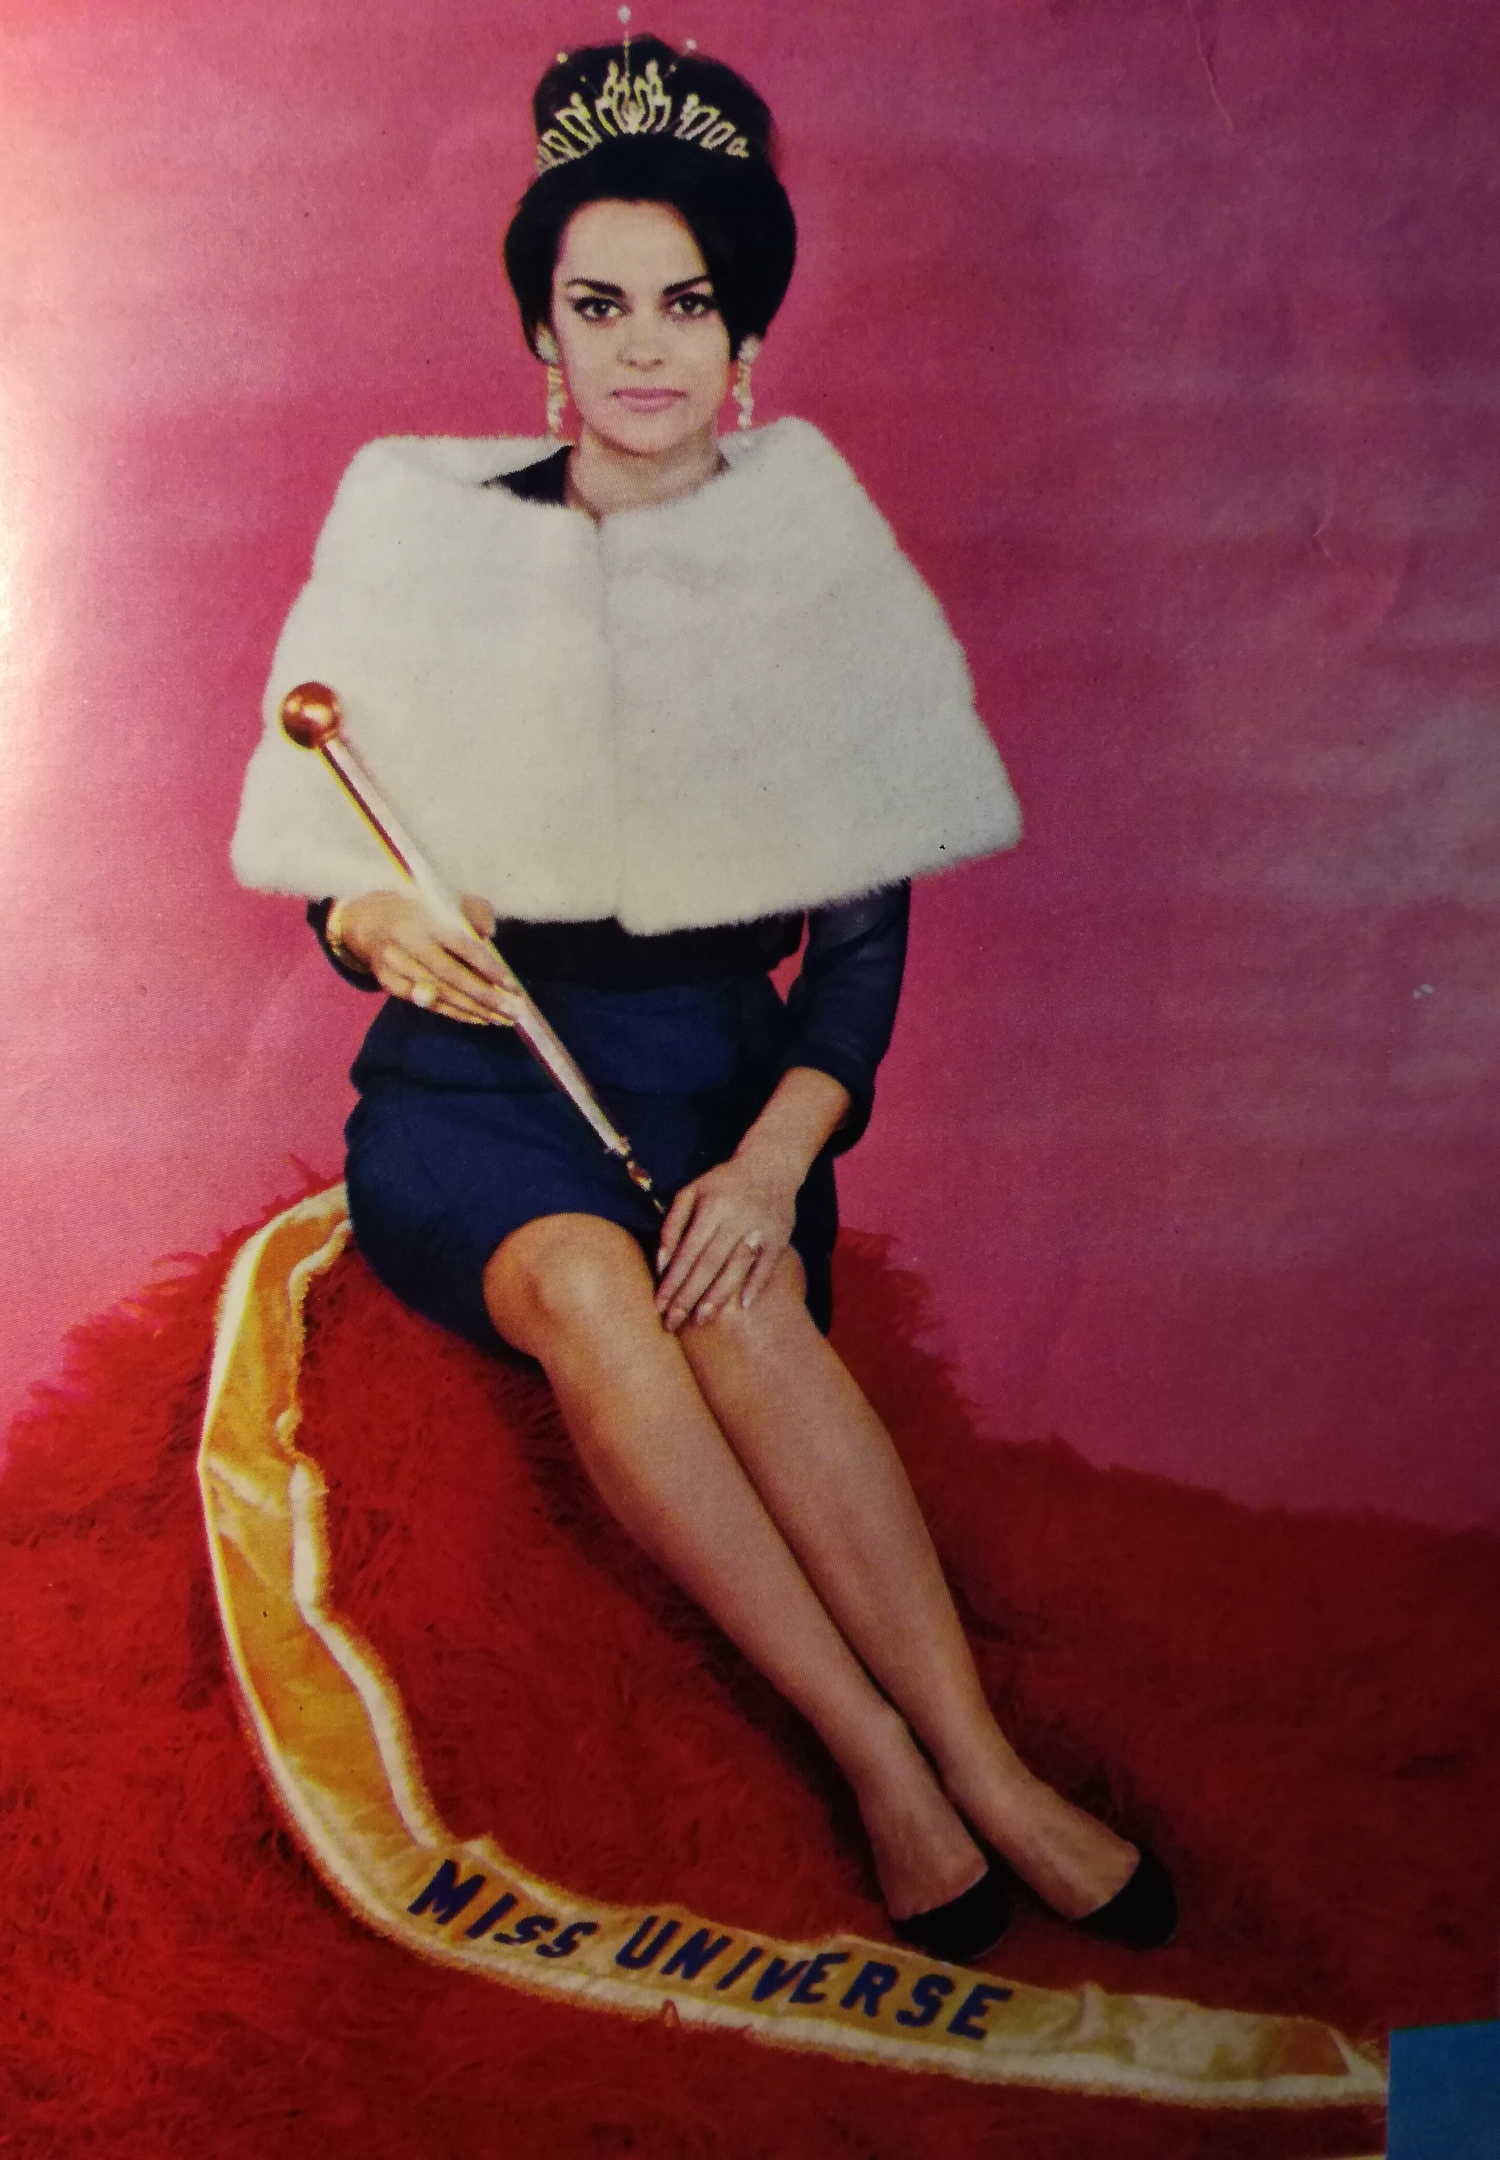 Κατερίνα Τσοπέη. Μις Υφήλιος 1964